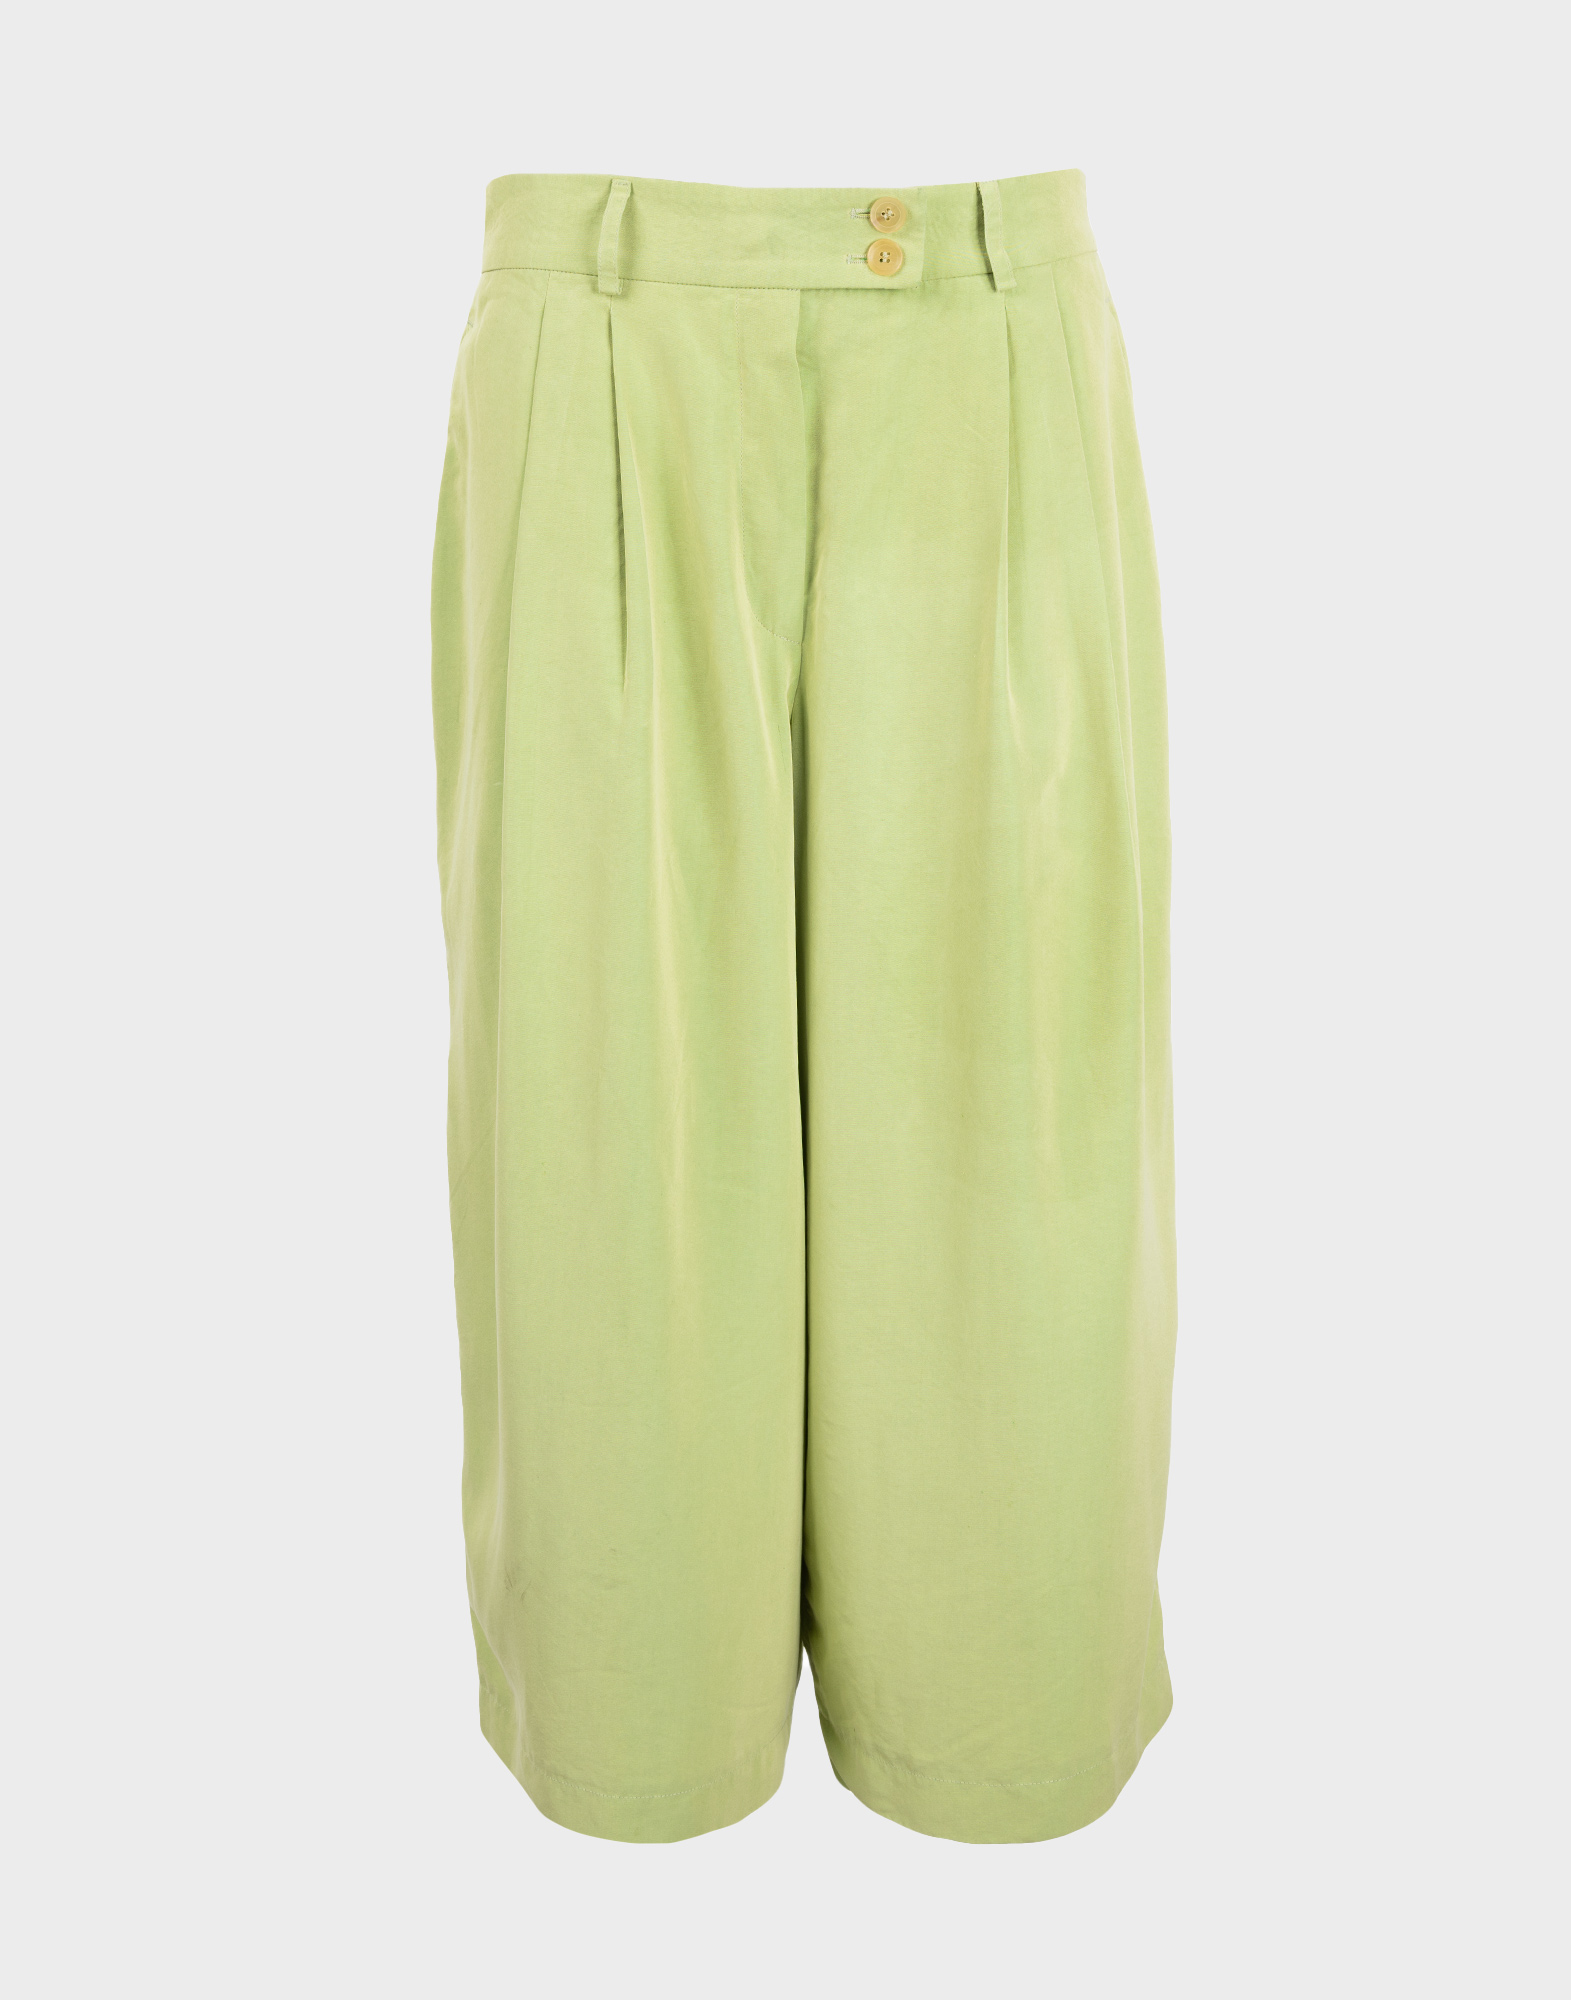 pantaloni verdi da donna morbidi in seta, lunghi fino al polpaccio, chiusura laterale con due bottoni